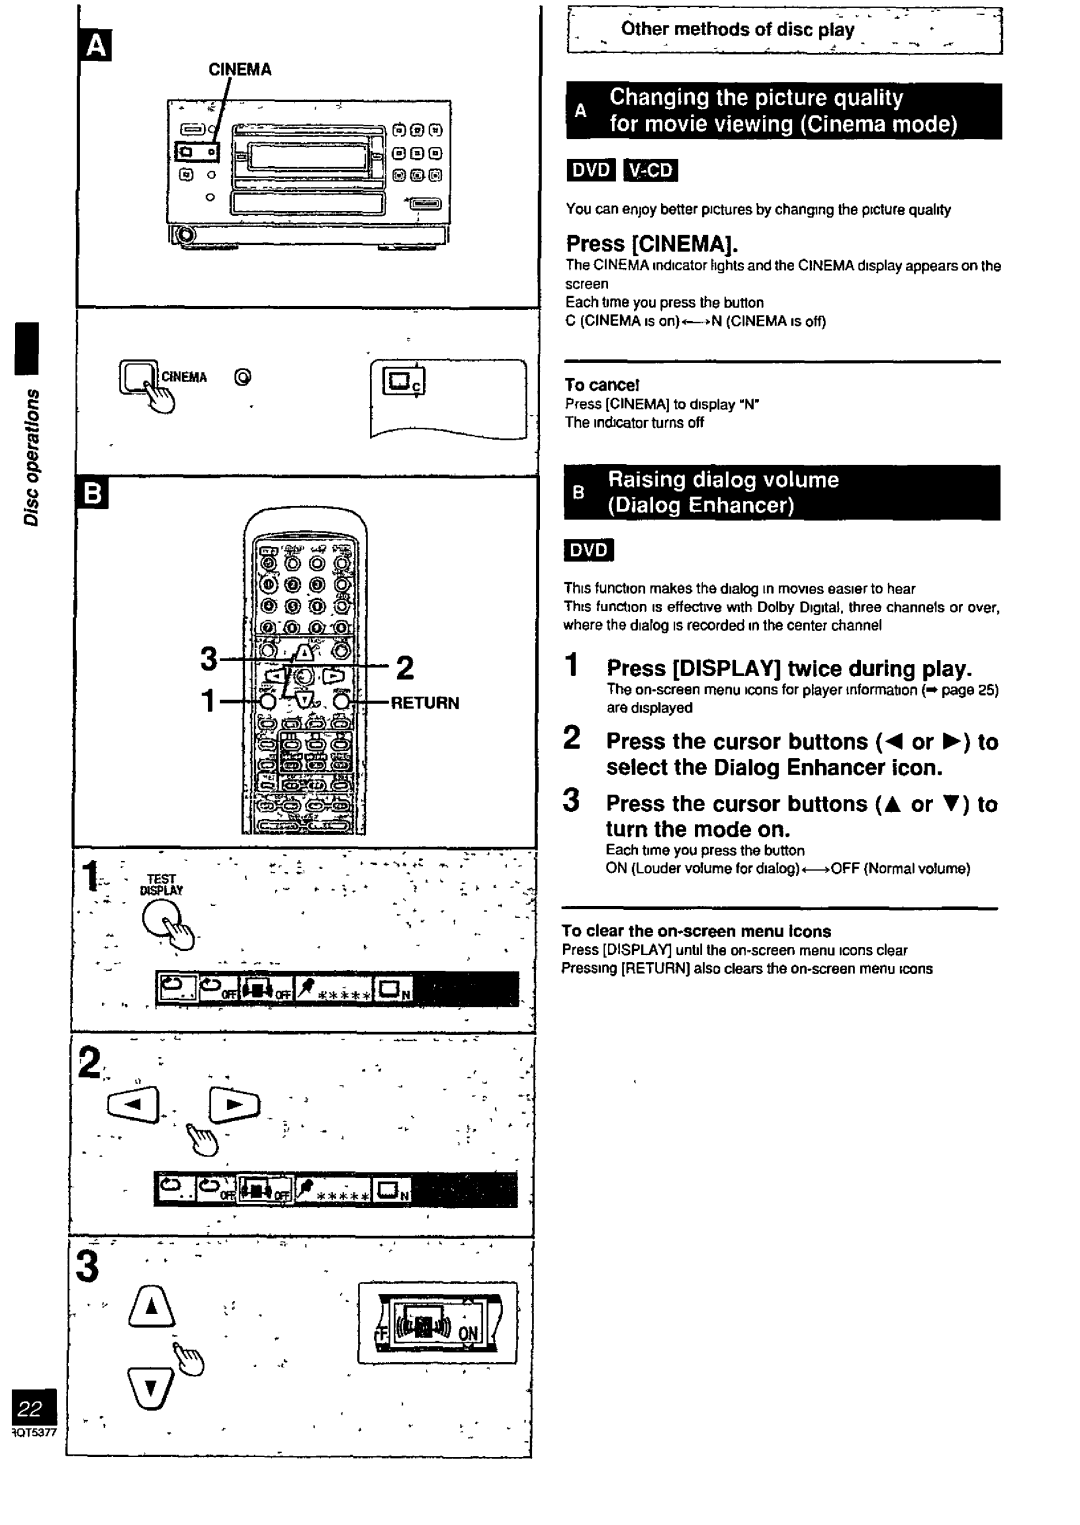 Panasonic SC-PM08, SC-PM88 manual 